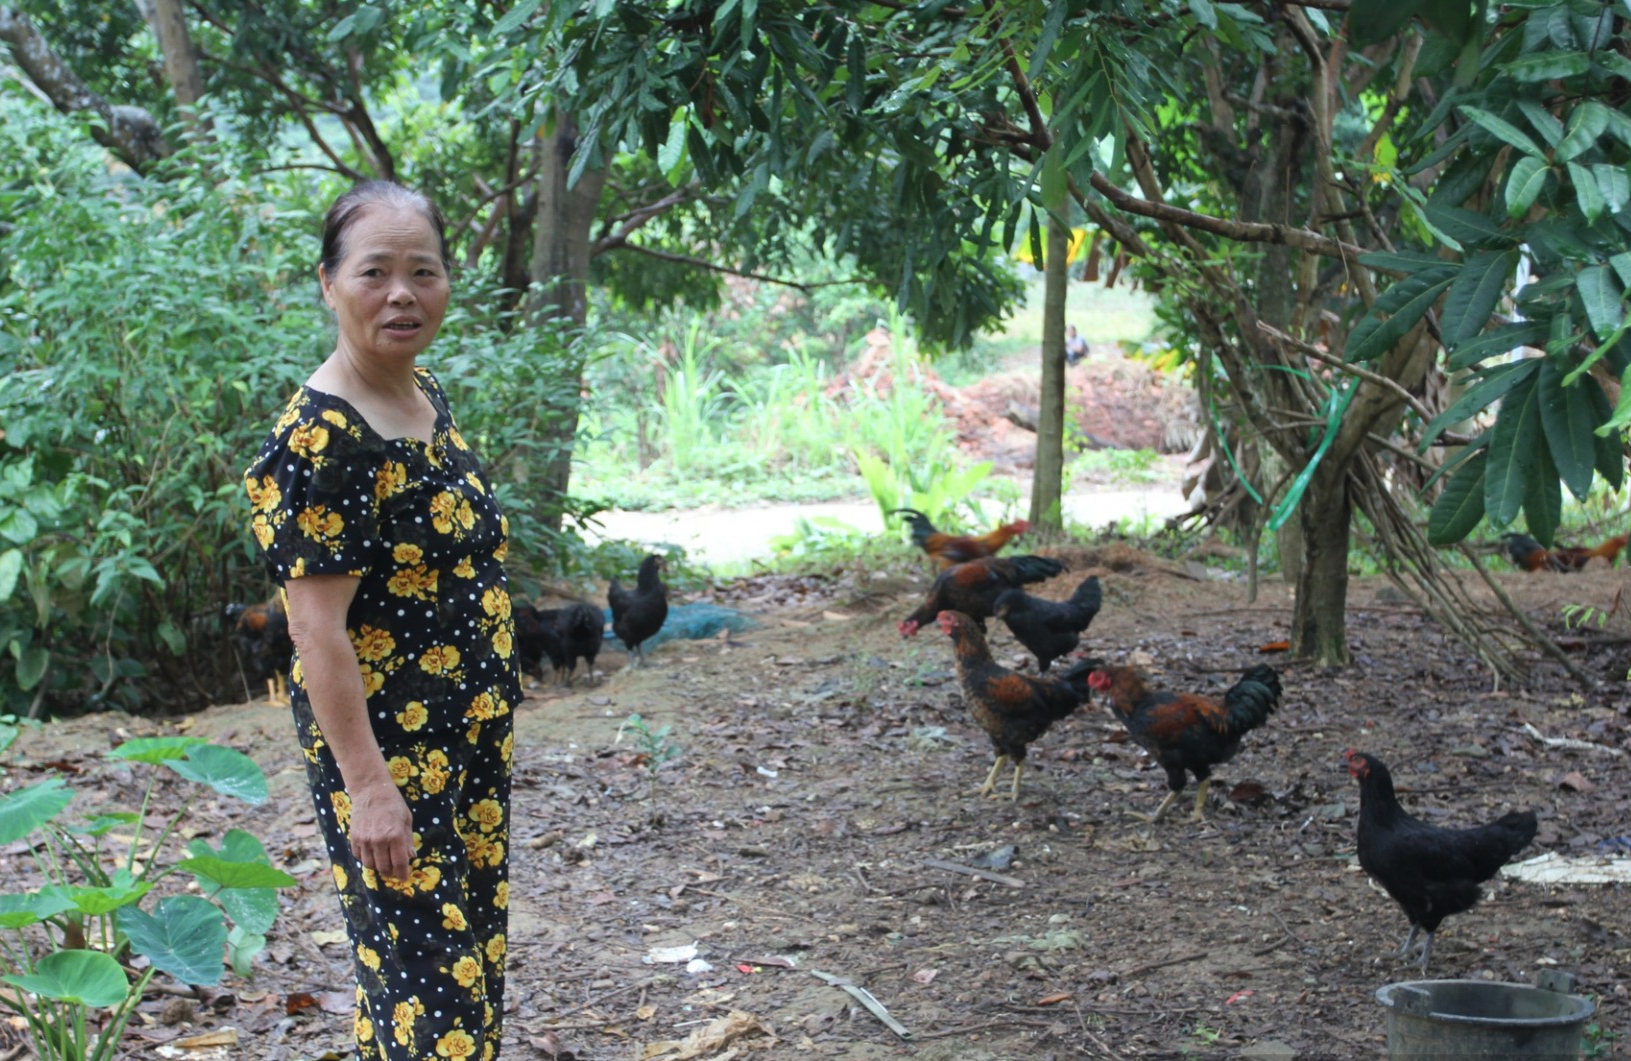 Bà Hằng chuyển từ nuôi lợn sang nuôi gà được khoảng 5 năm nay